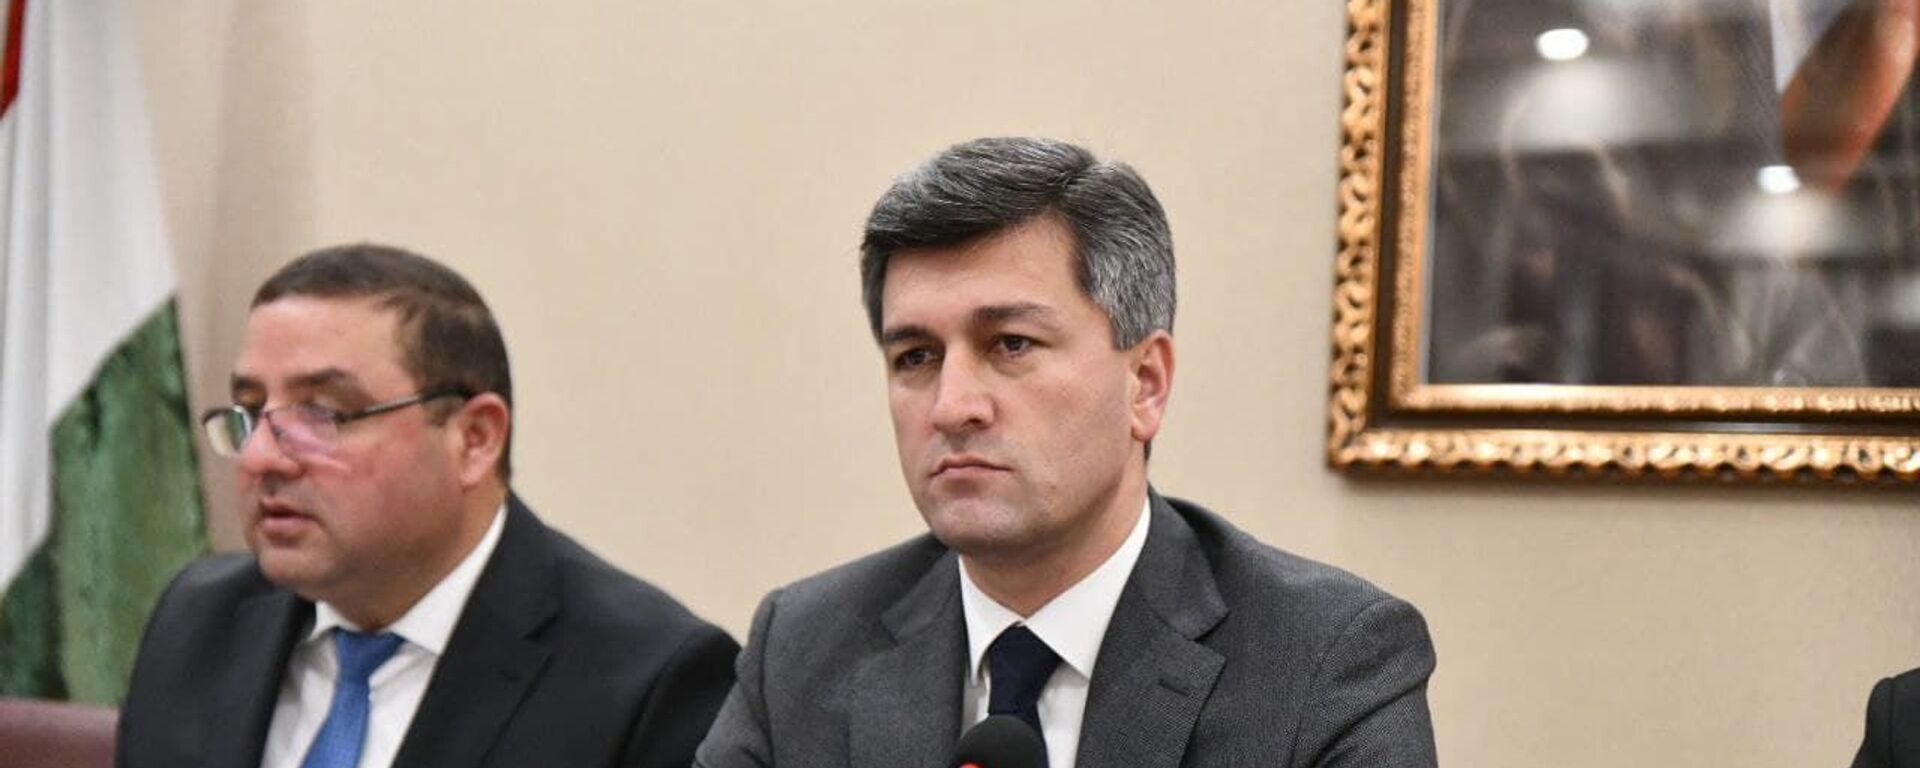 Директор Агентства гражданской авиации Таджикистана Икром Субхонзода - Sputnik Таджикистан, 1920, 18.05.2021